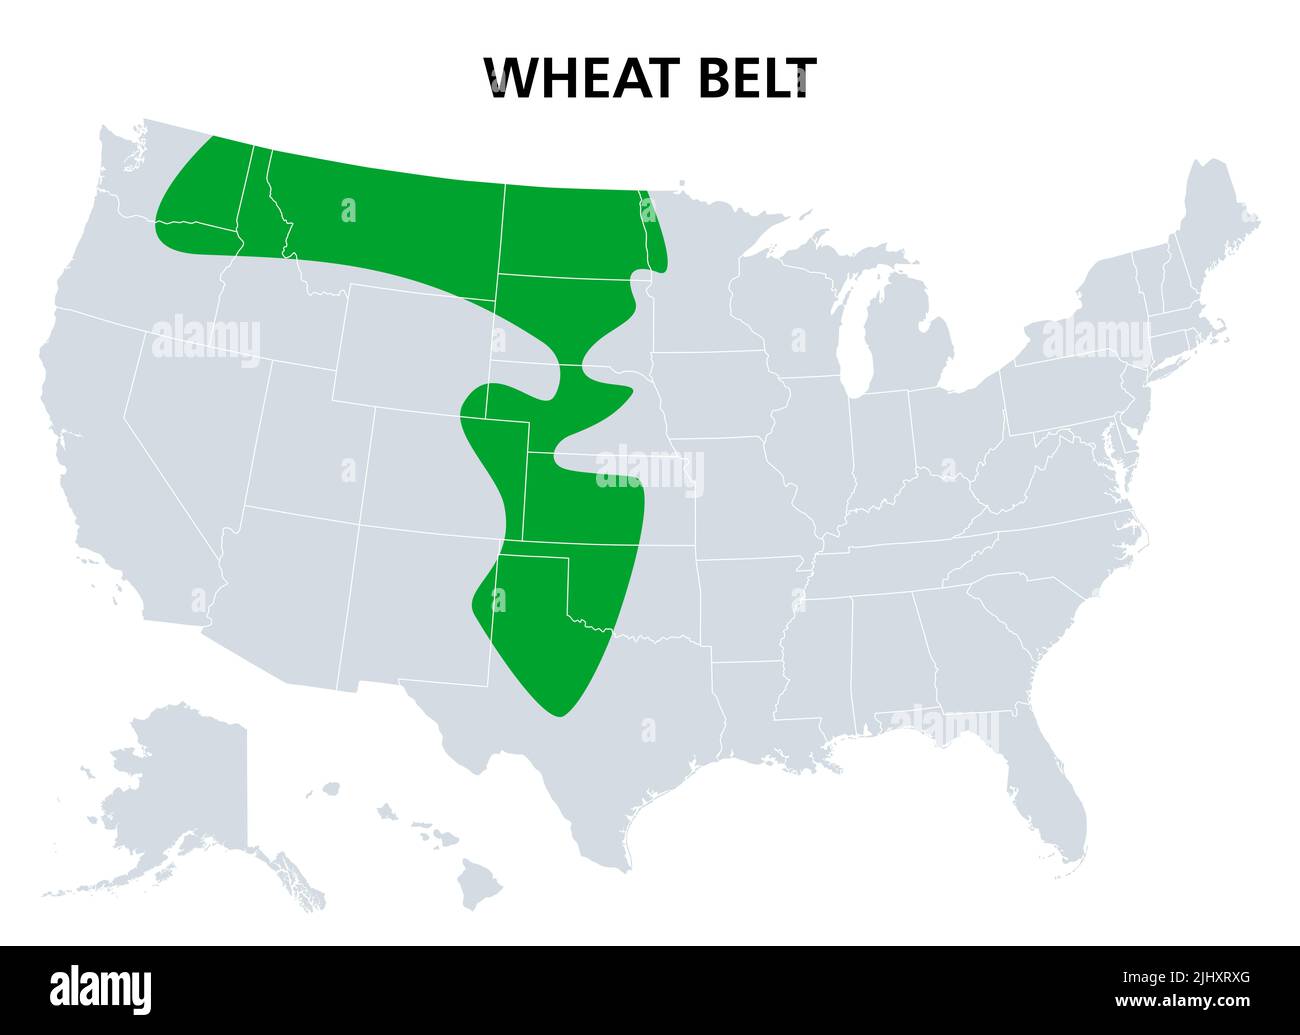 Cinturón de Trigo de los Estados Unidos, mapa político. Parte de las grandes llanuras de América del Norte donde el trigo es el cultivo dominante. Foto de stock